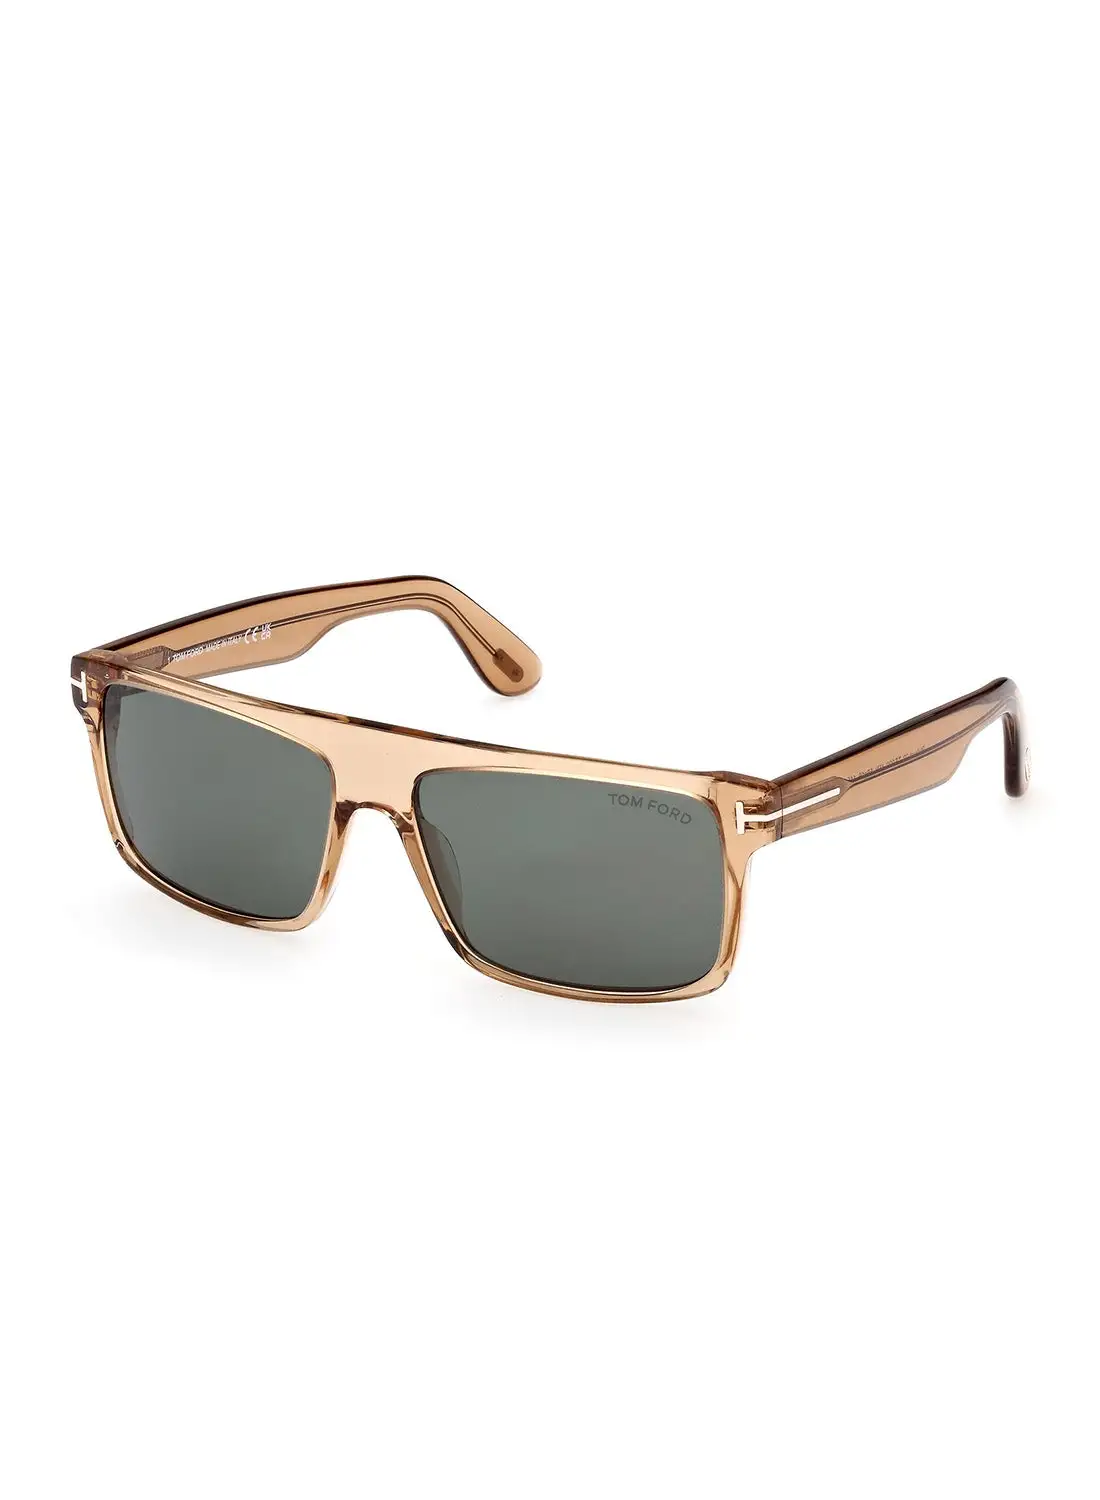 TOM FORD Men's UV Protection Rectangular Sunglasses - FT099945N58 - Lens Size: 58 Mm